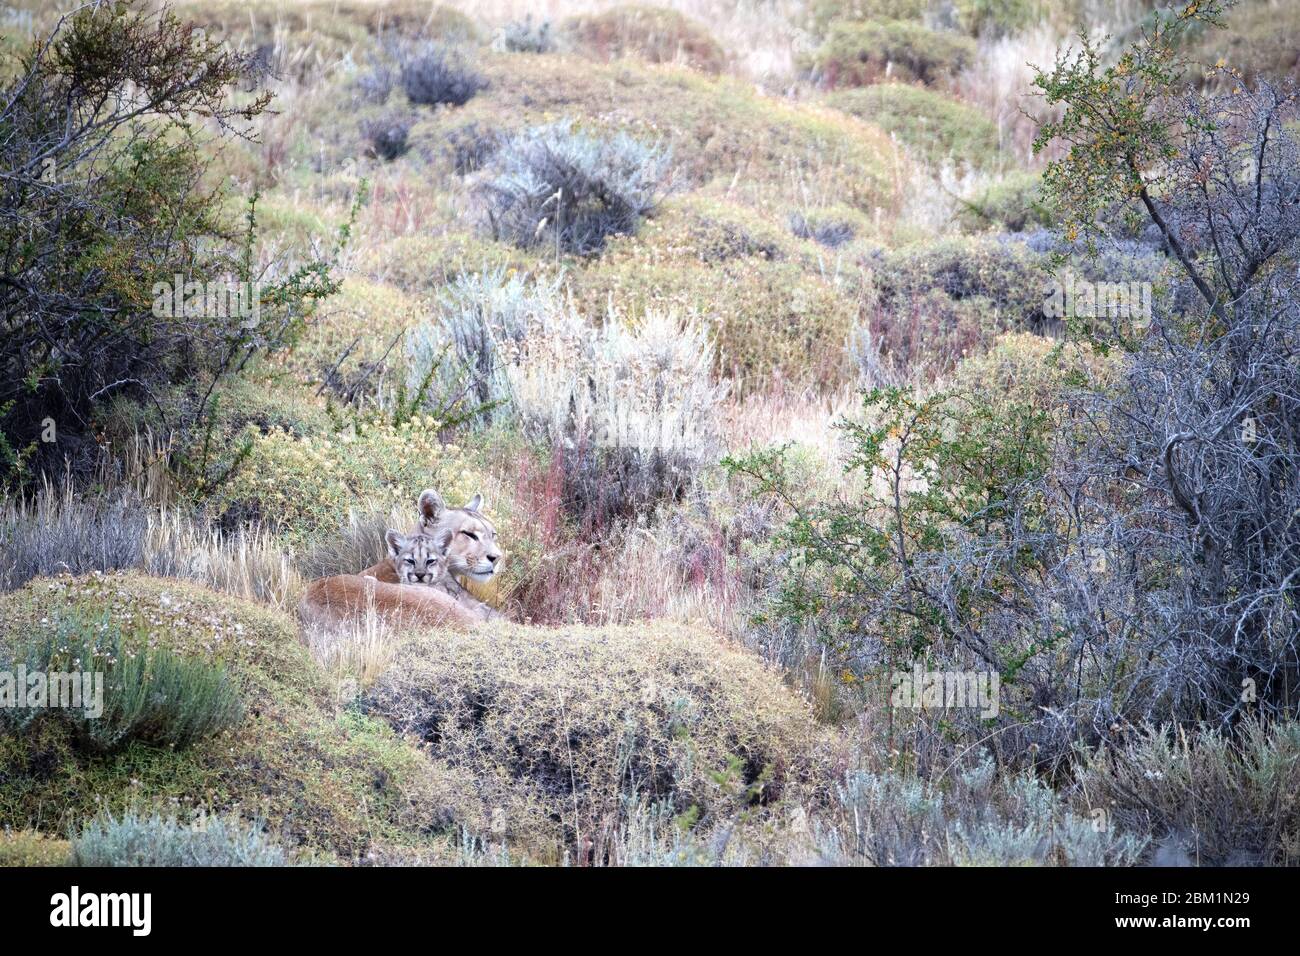 Puma mère et single cub, également connu sous le nom de couguar ou lion de montagne, se reposant et regardant de l'herbe et des buissons sur une colline. Banque D'Images